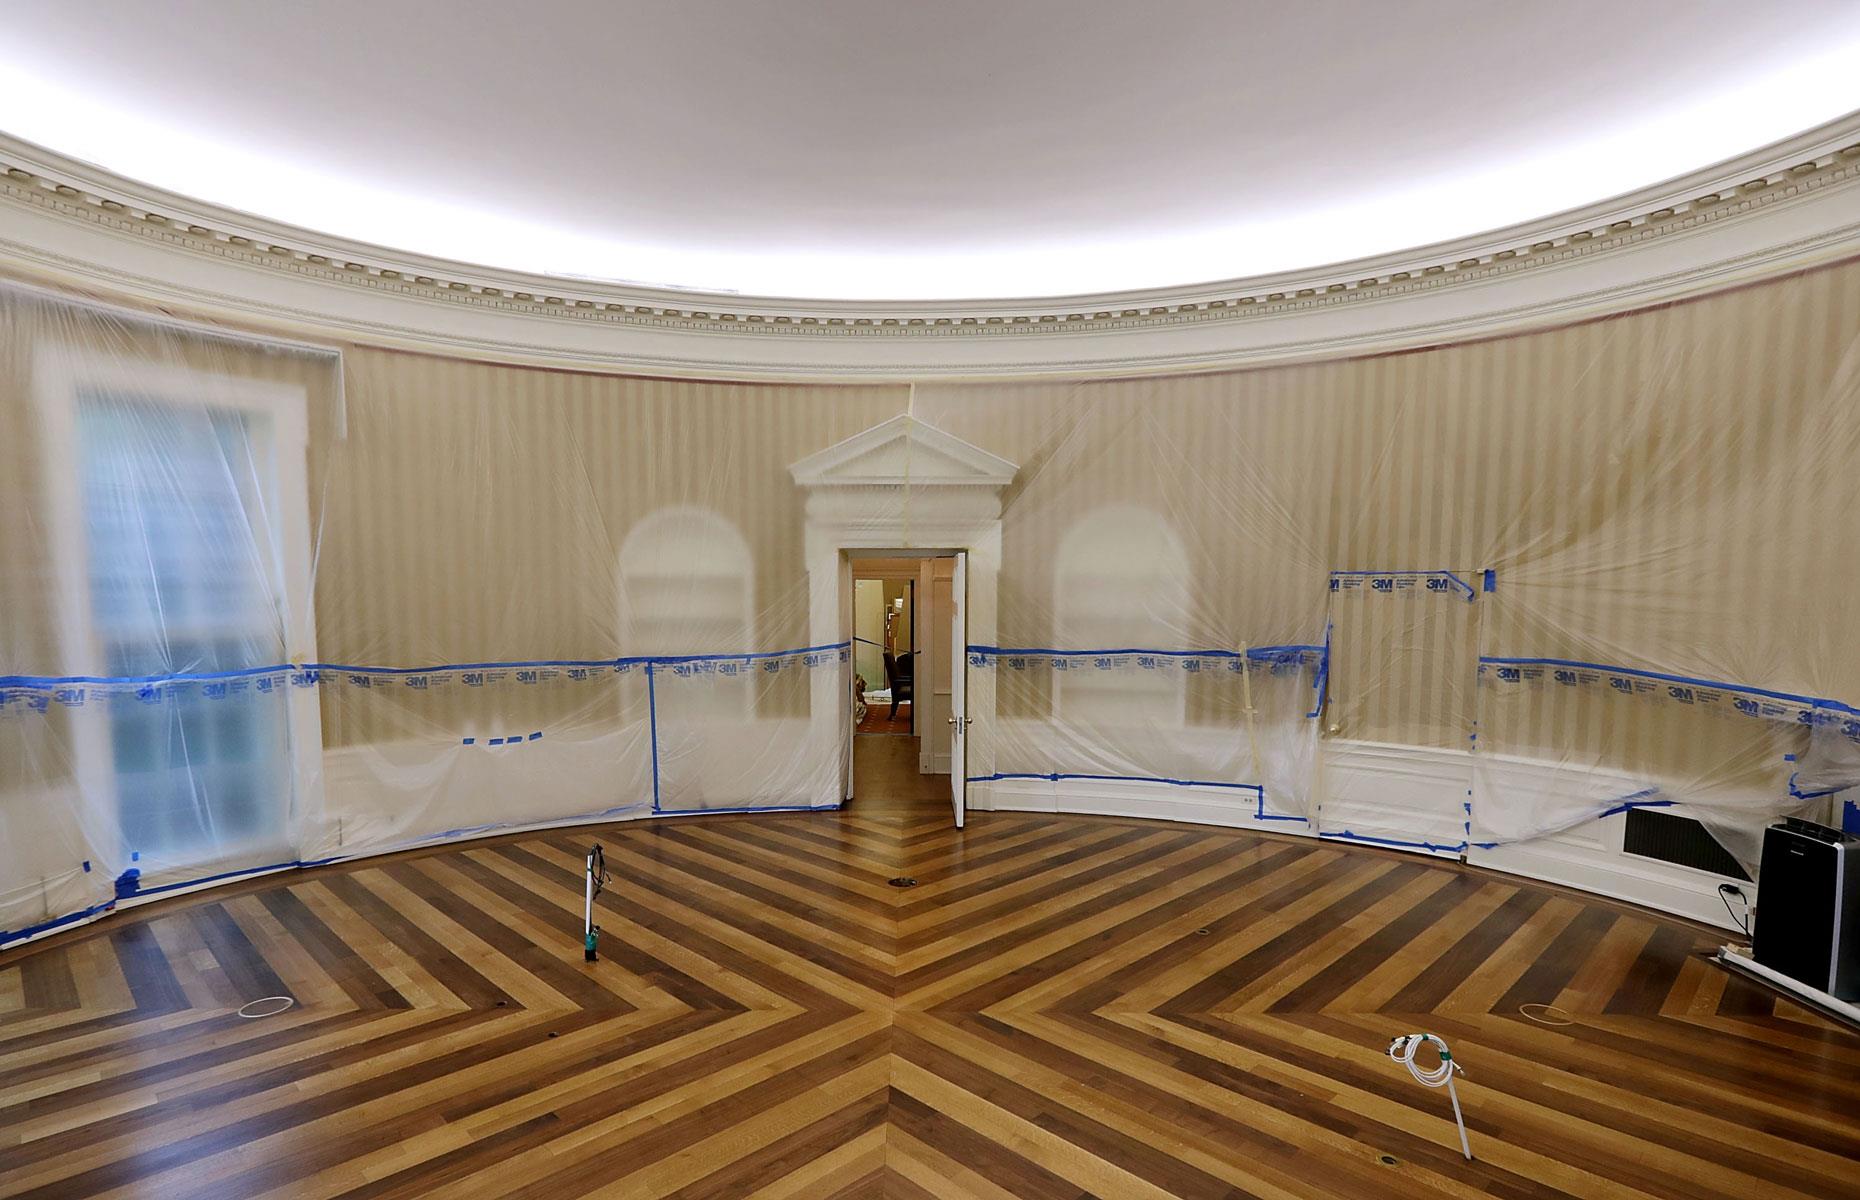 Oval Office overhaul